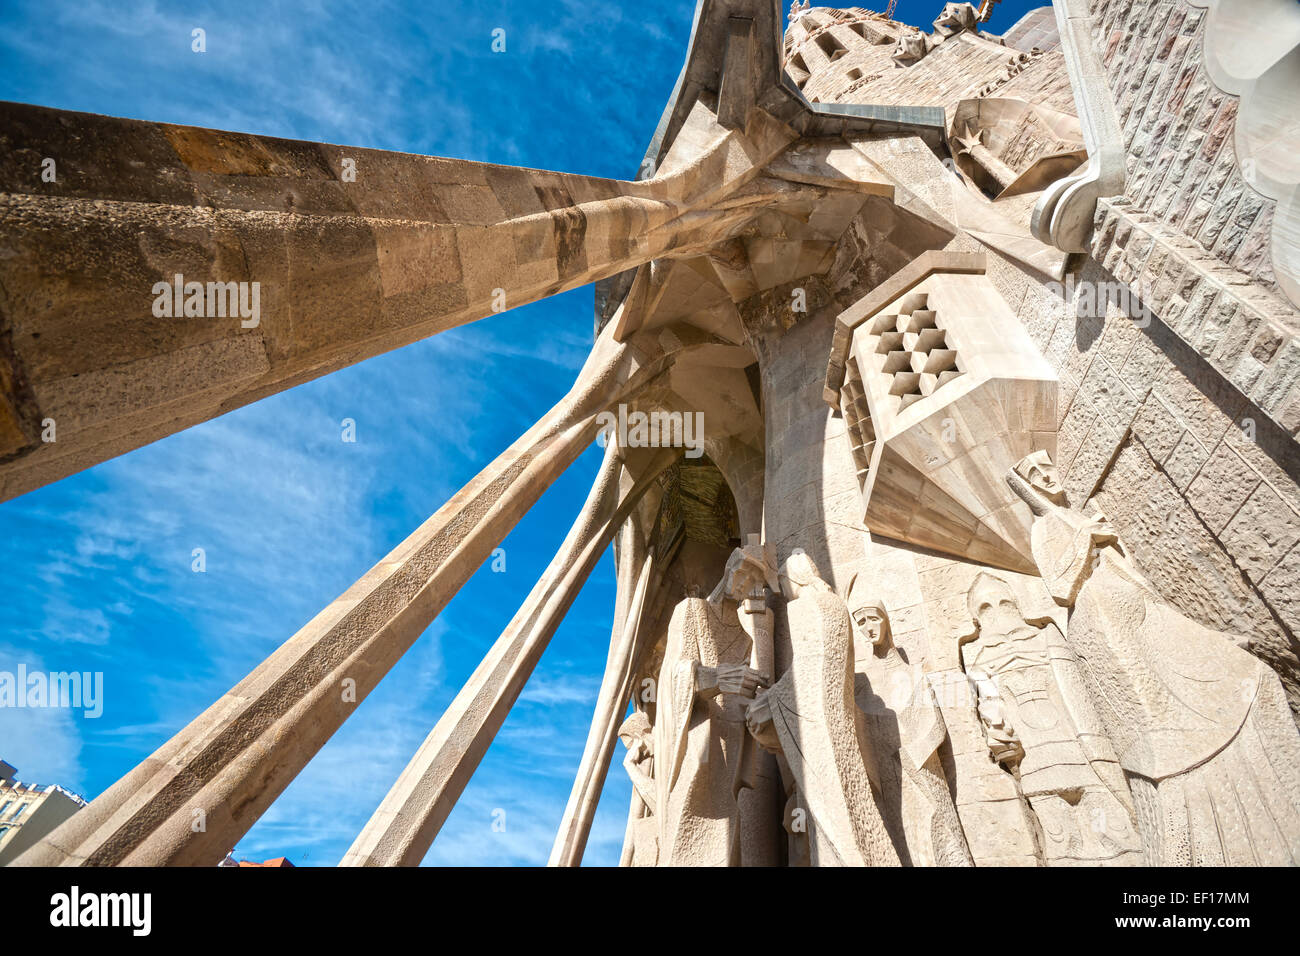 Barcellona, Spagna - 14 dicembre: La Sagrada Familia - la cattedrale progettata da Gaudi, che è in fase di costruzione dal 19 M Foto Stock